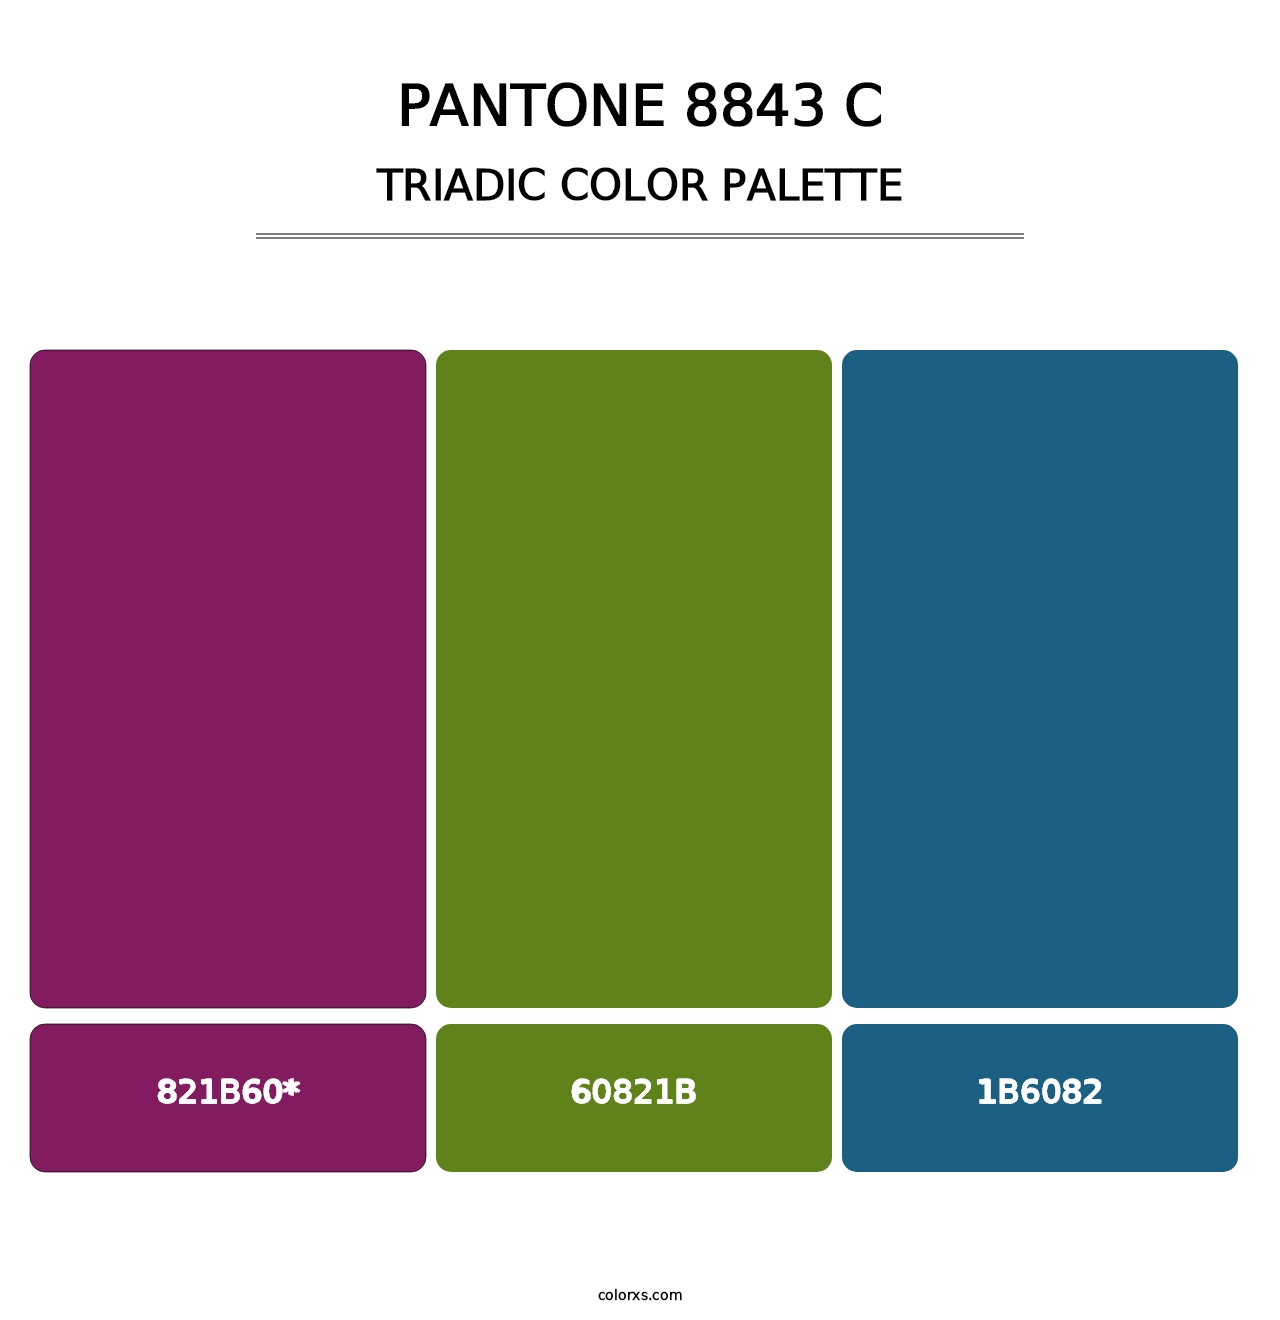 PANTONE 8843 C - Triadic Color Palette